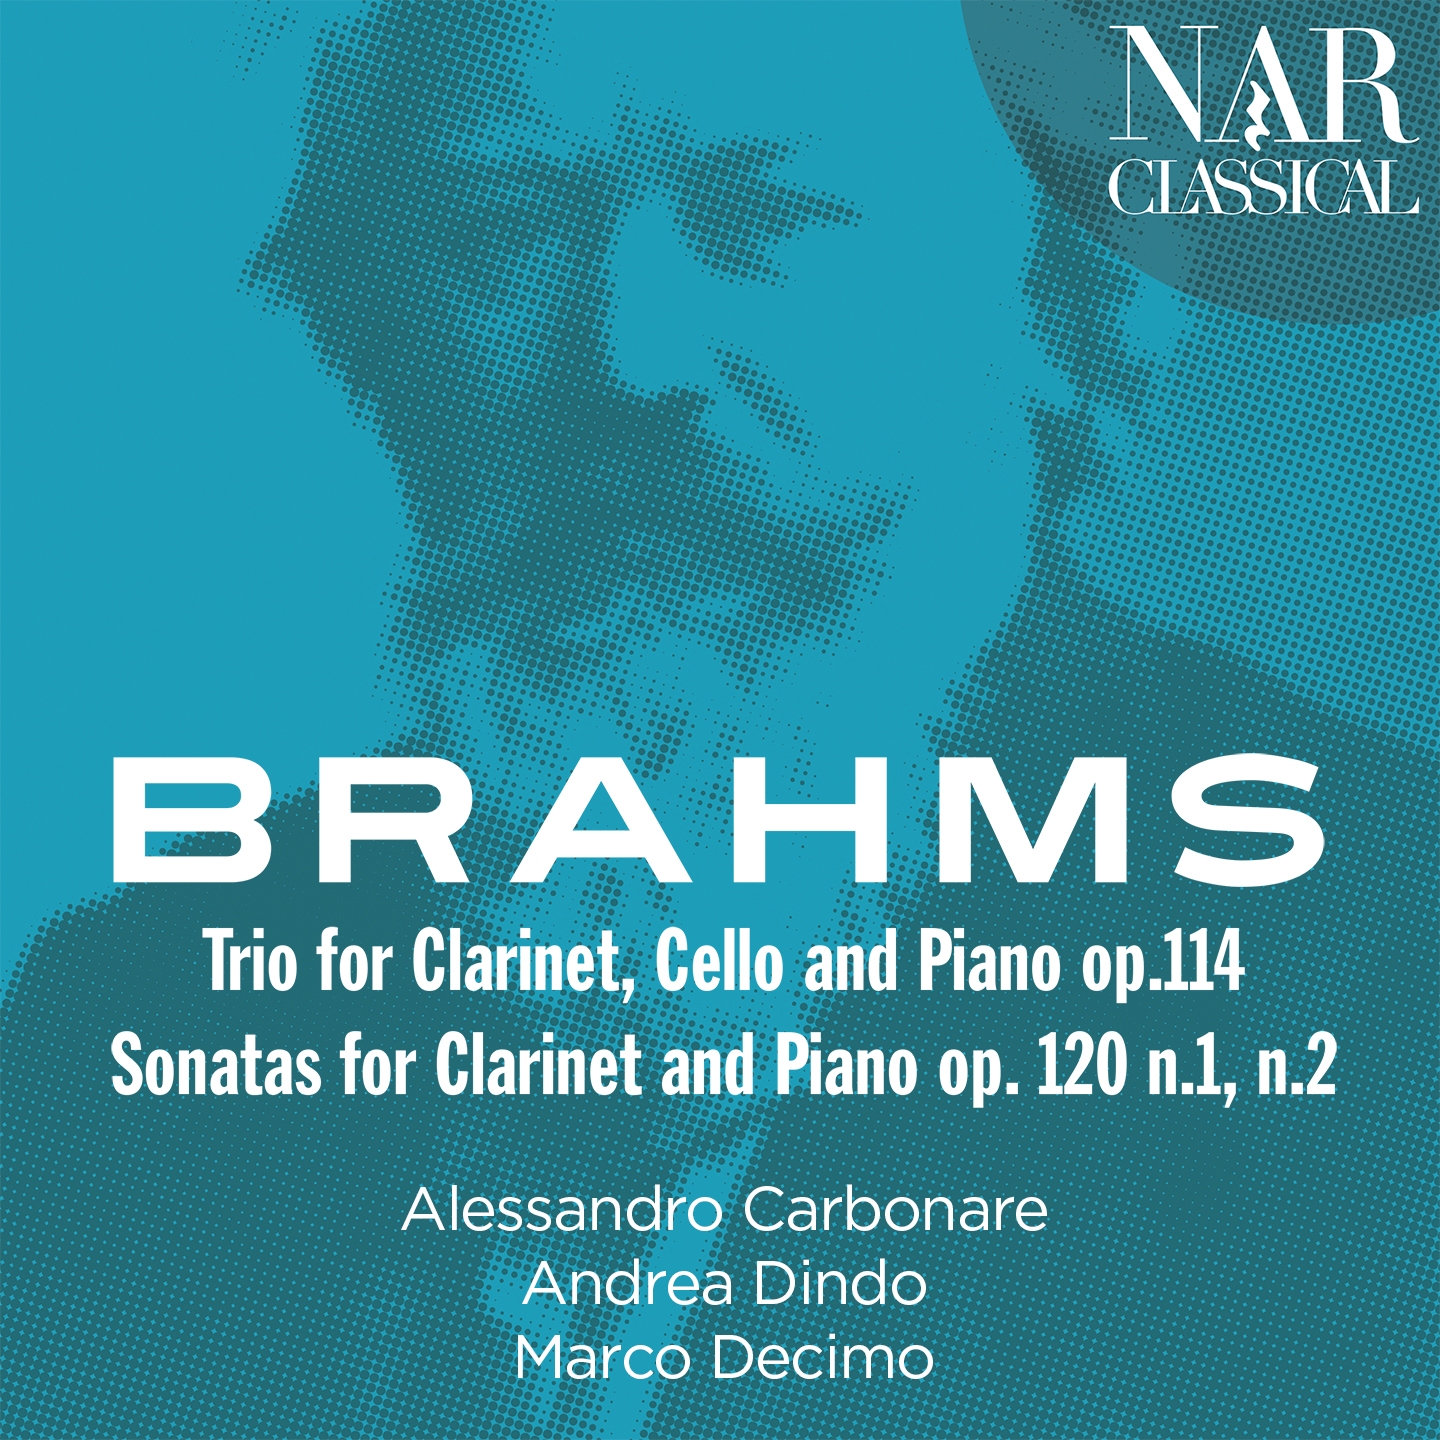 Clarinet Trio in A Minor, Op.114: III. Andantino grazioso